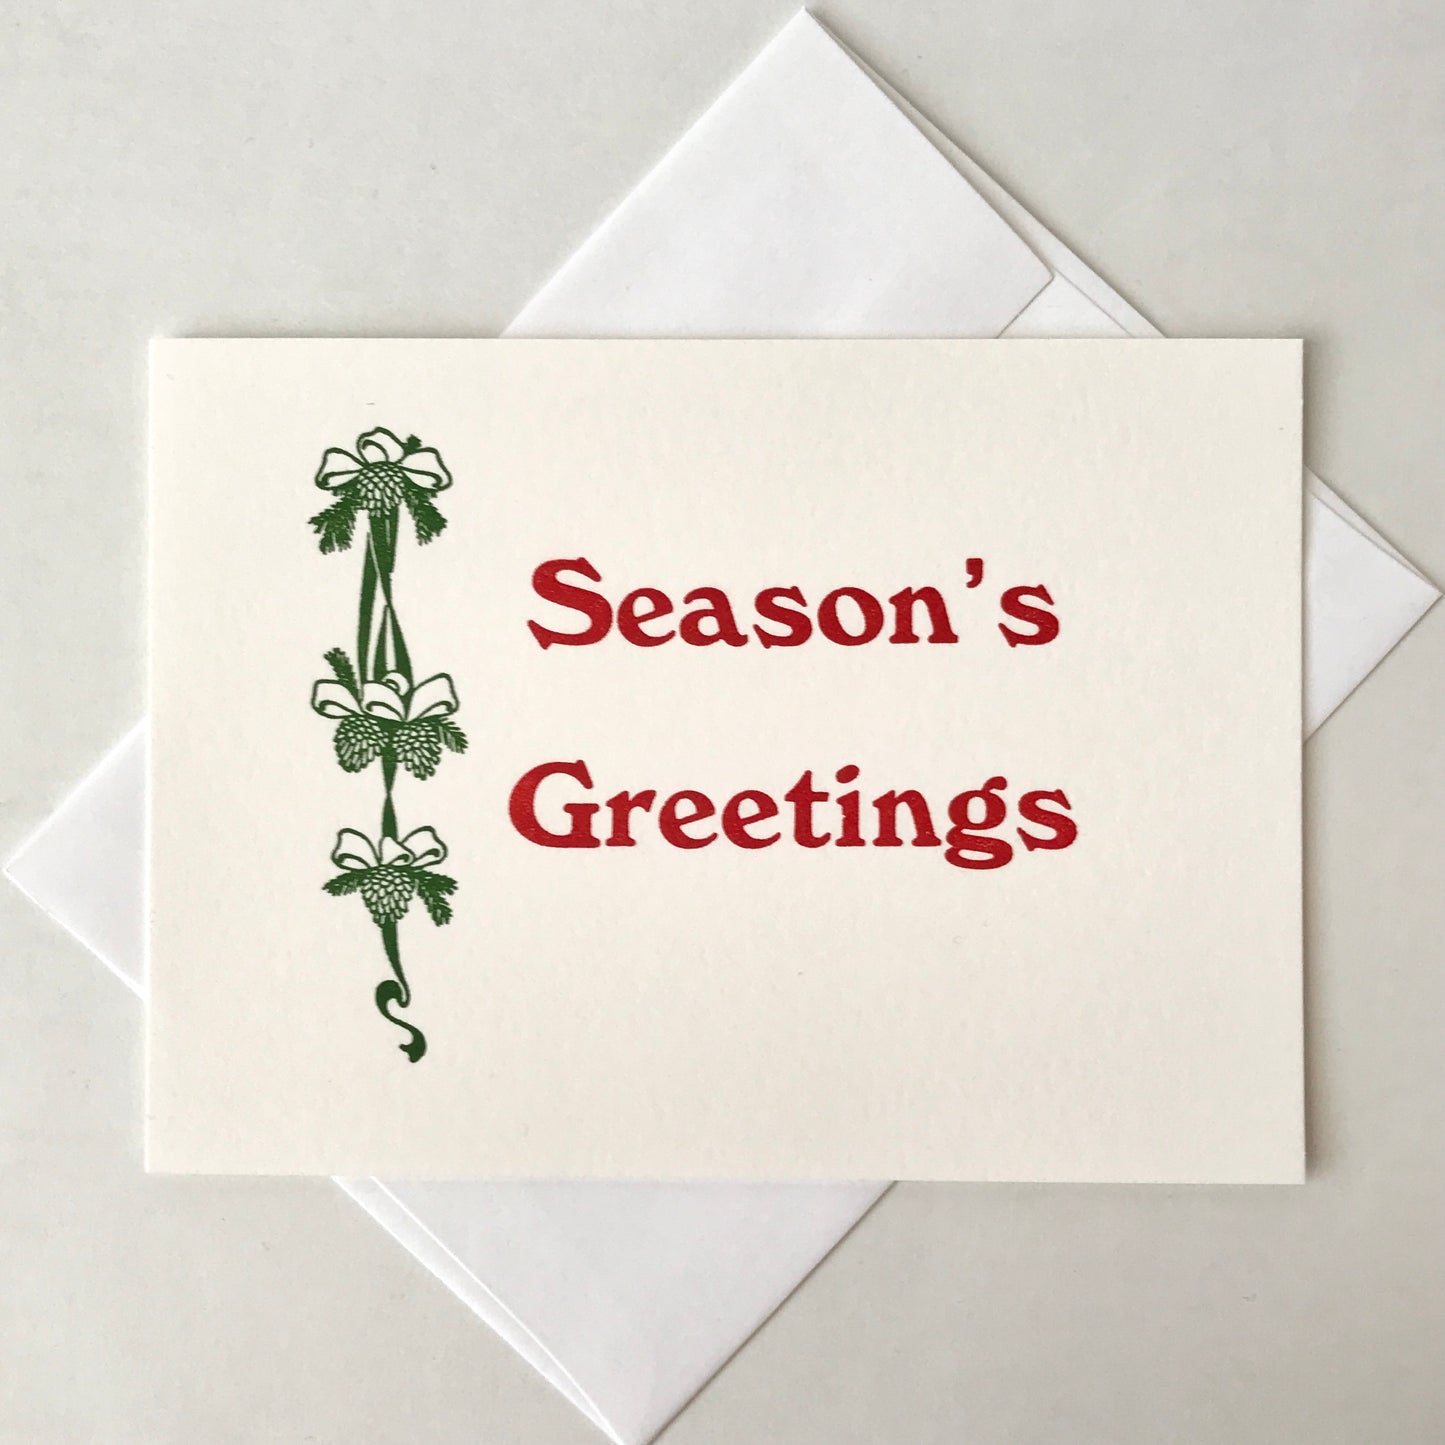 Seasons Greetings Card by Jacquie Sullivan